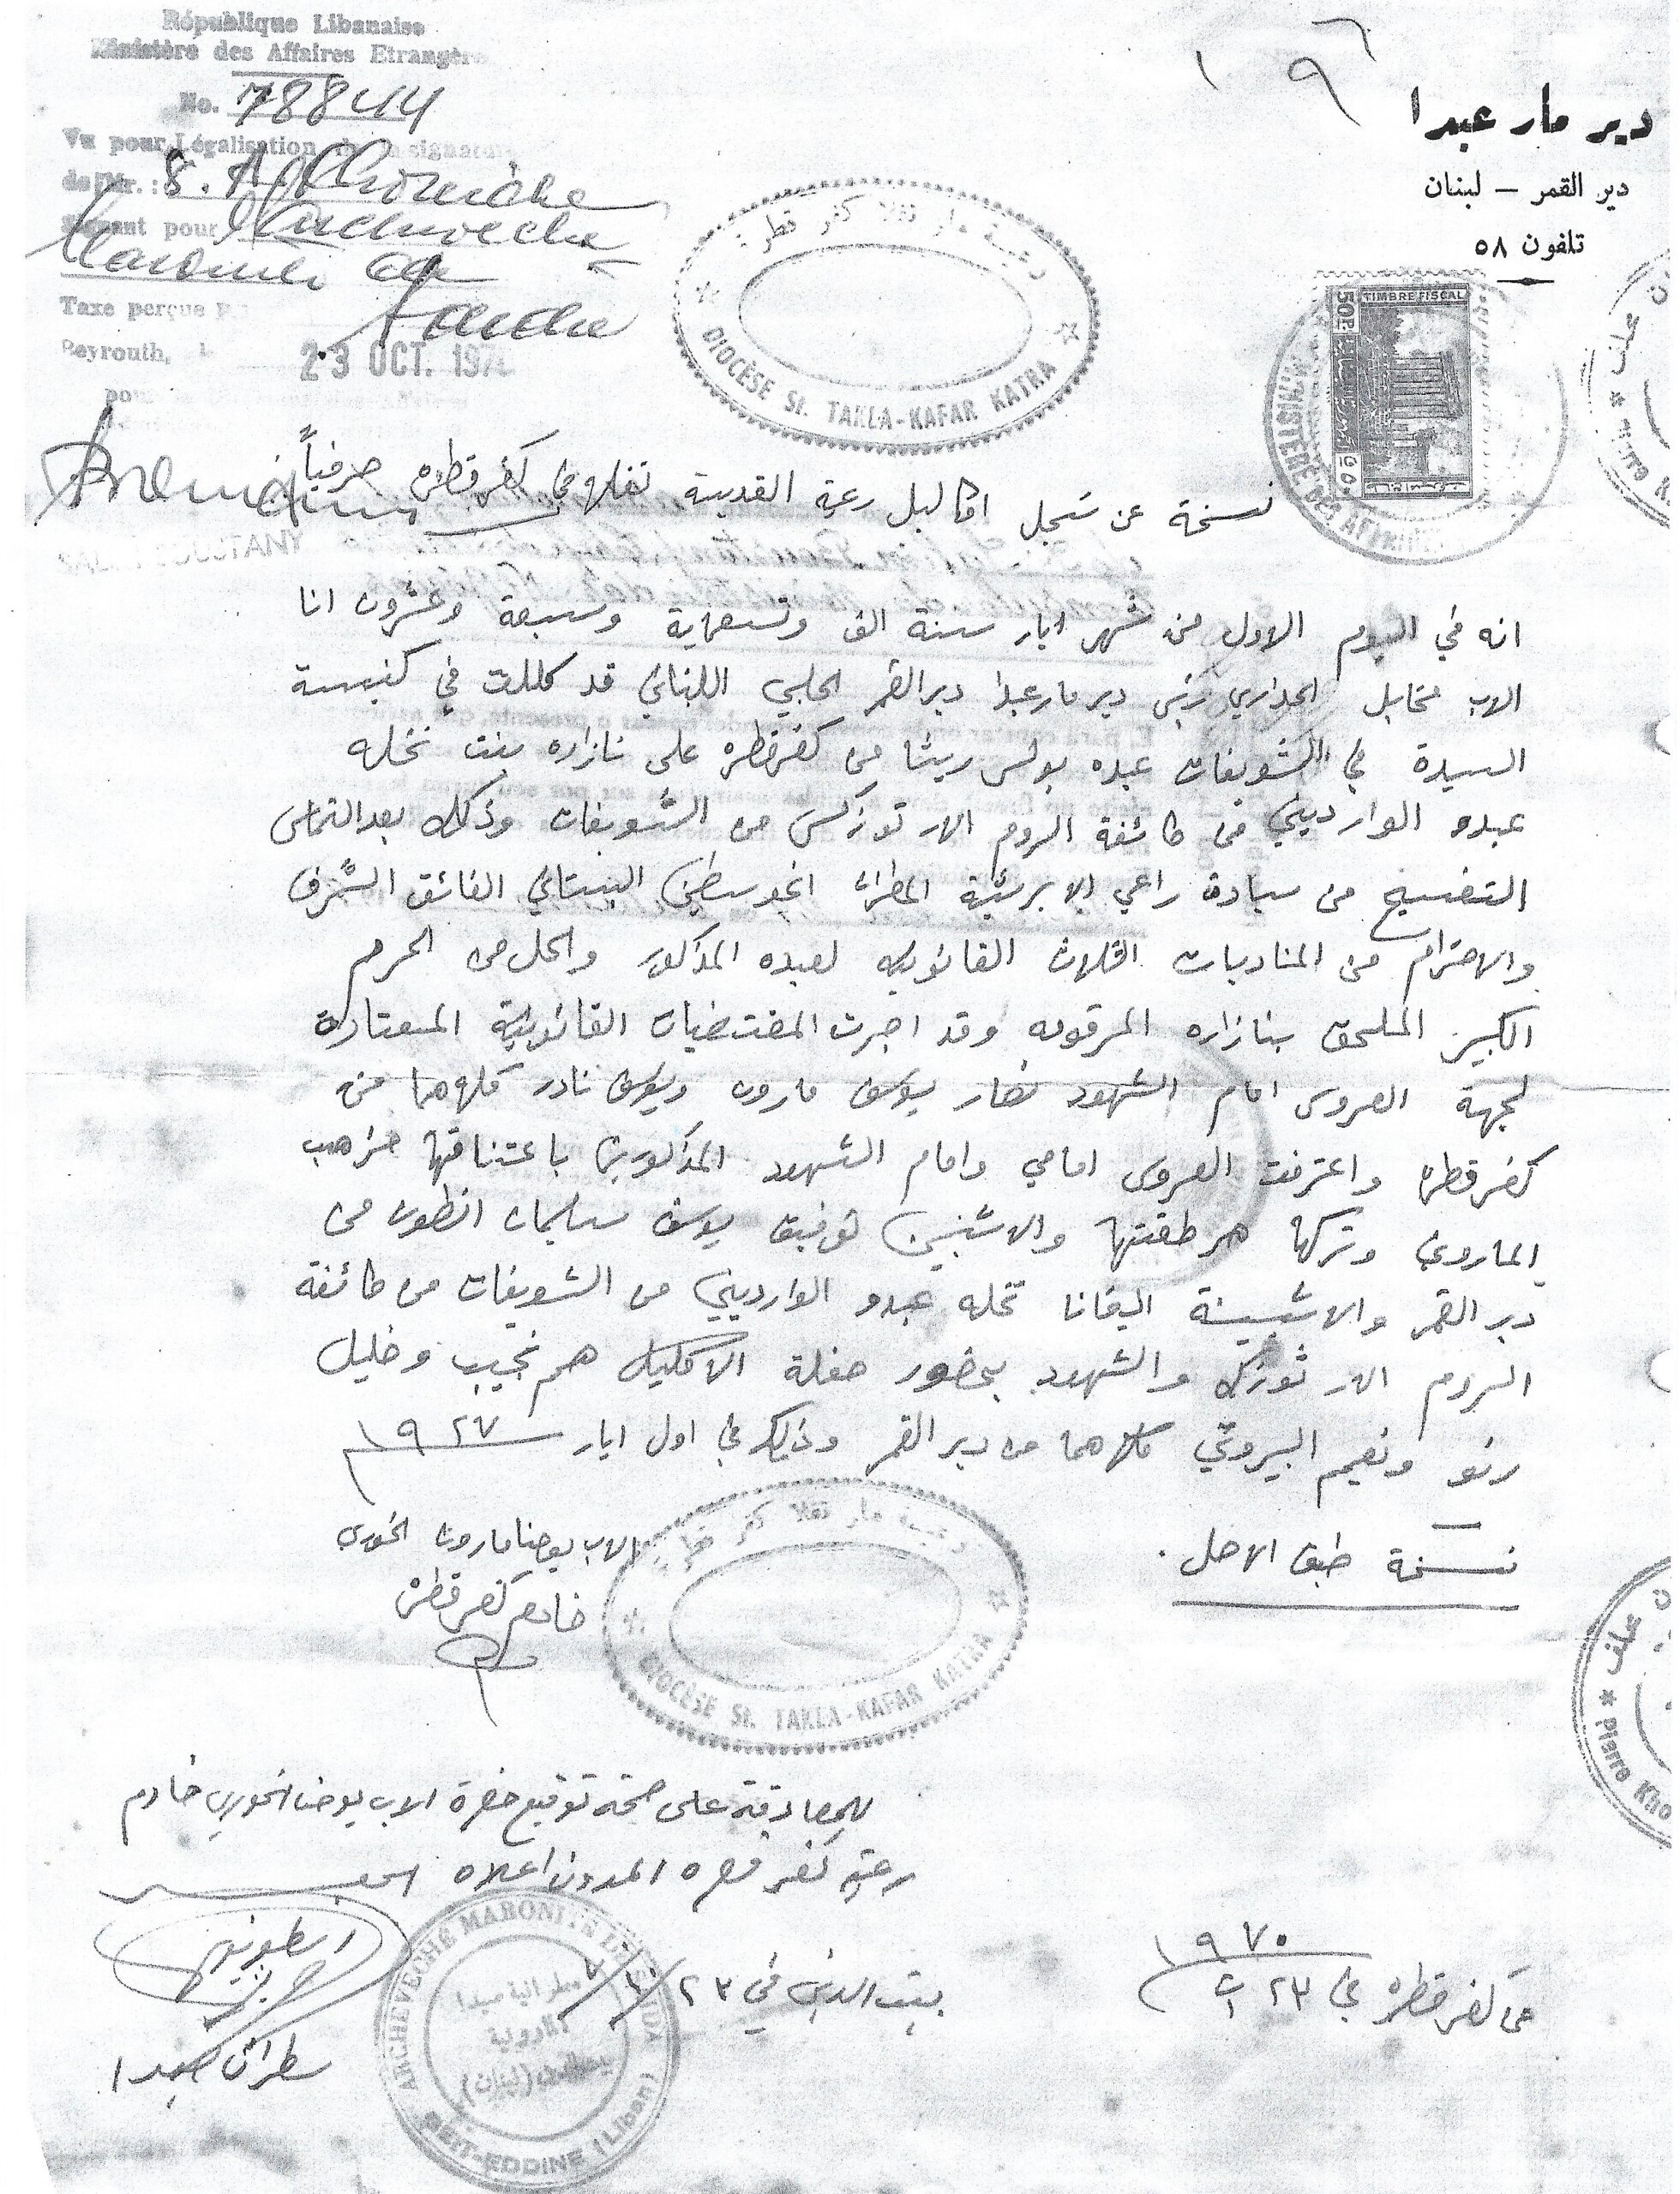 Certidão de casamento de Abdo (Salvador) e Nazareh, em árabe. (Acervo de Jorge Wardini Richa).